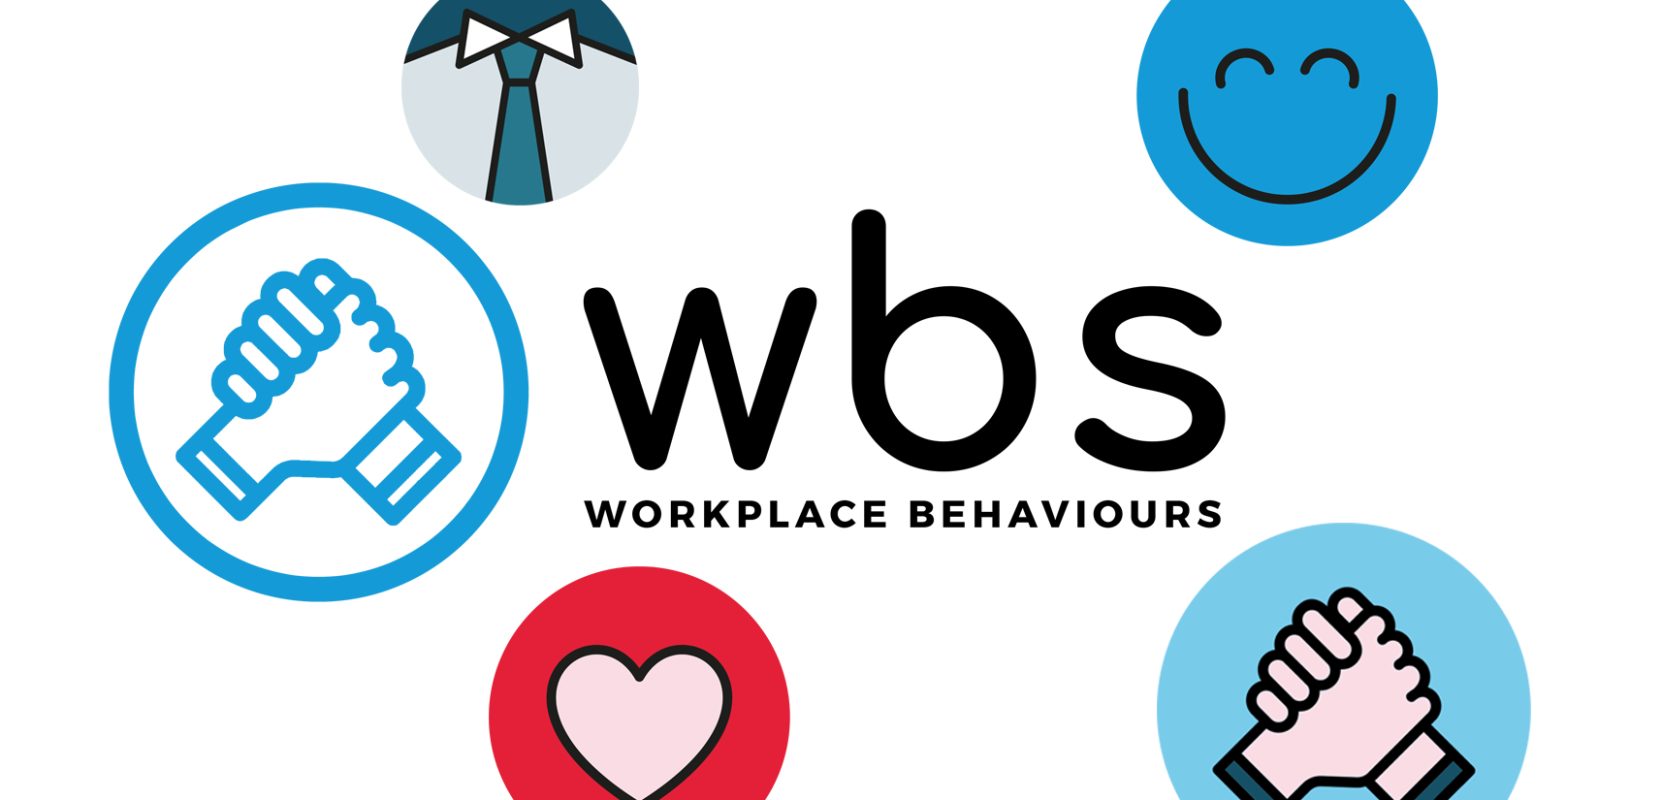 WBS blog banner image for social